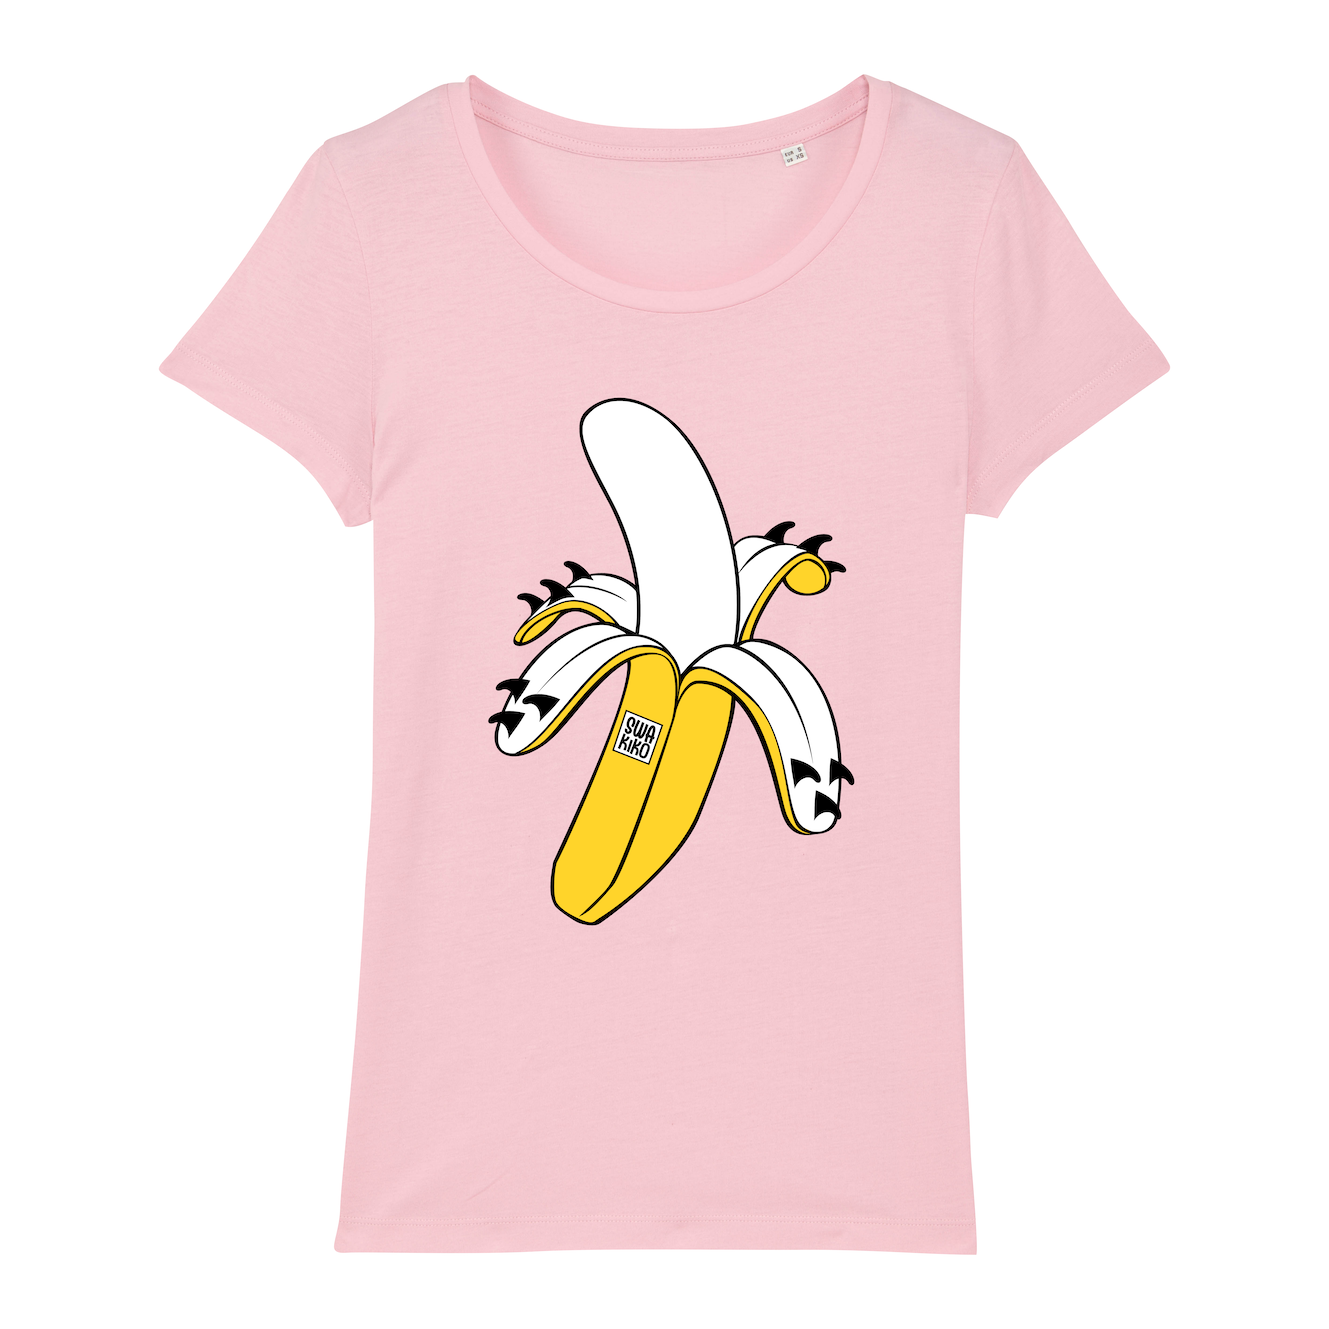 Surf t-shirt women pink, Banana Surf